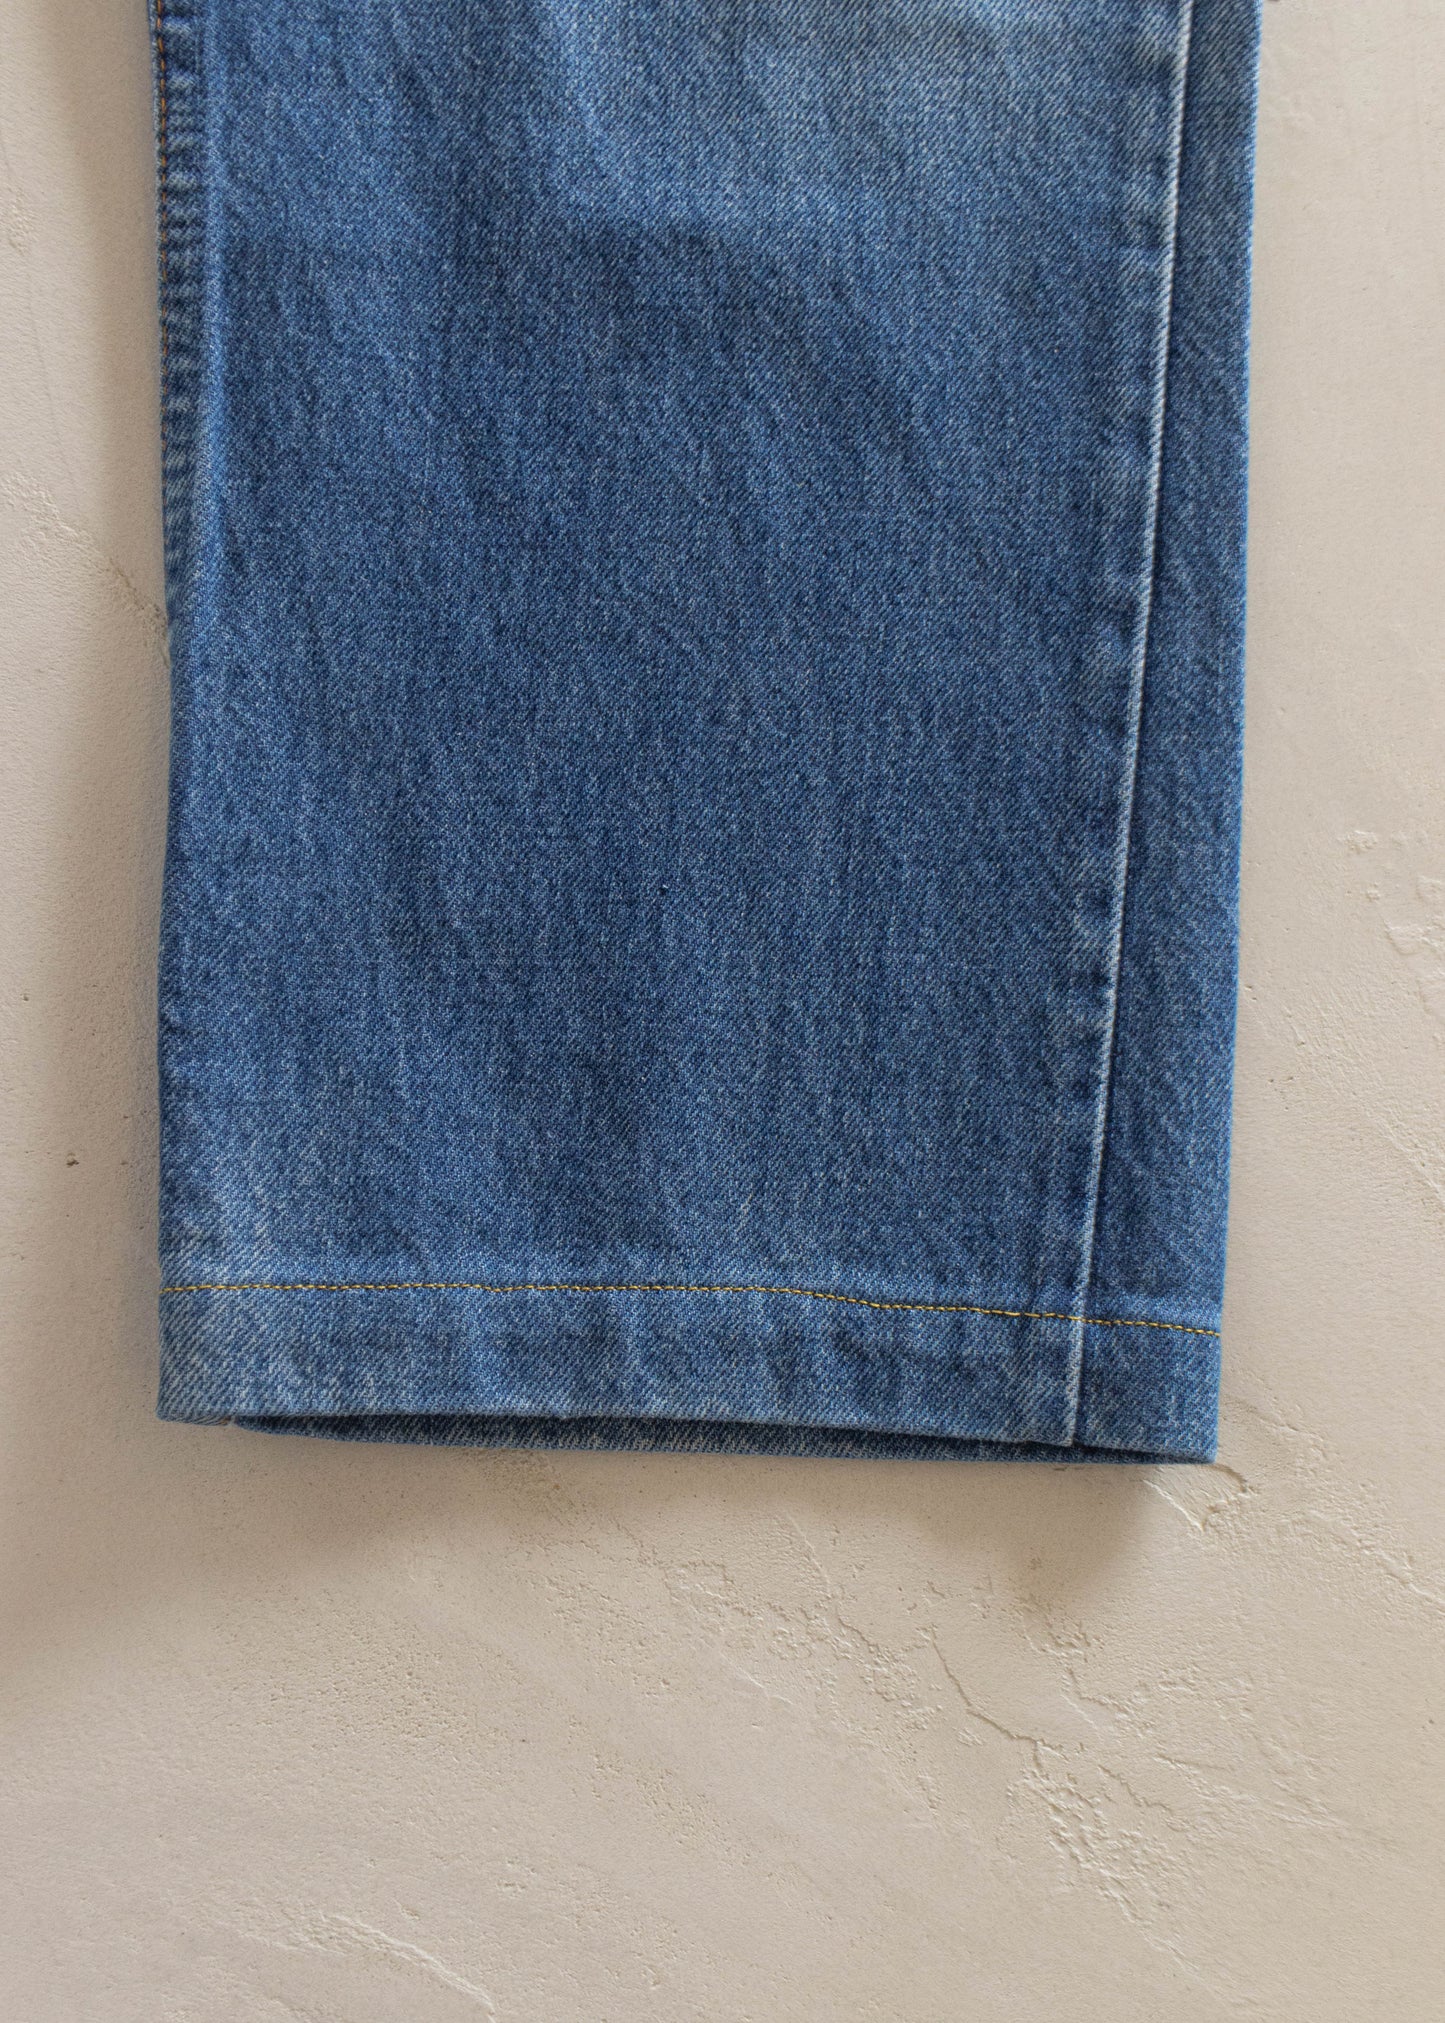 1980s Levi's 619 Orange Tab Midwash Jeans Size Women's 31 Men's 33